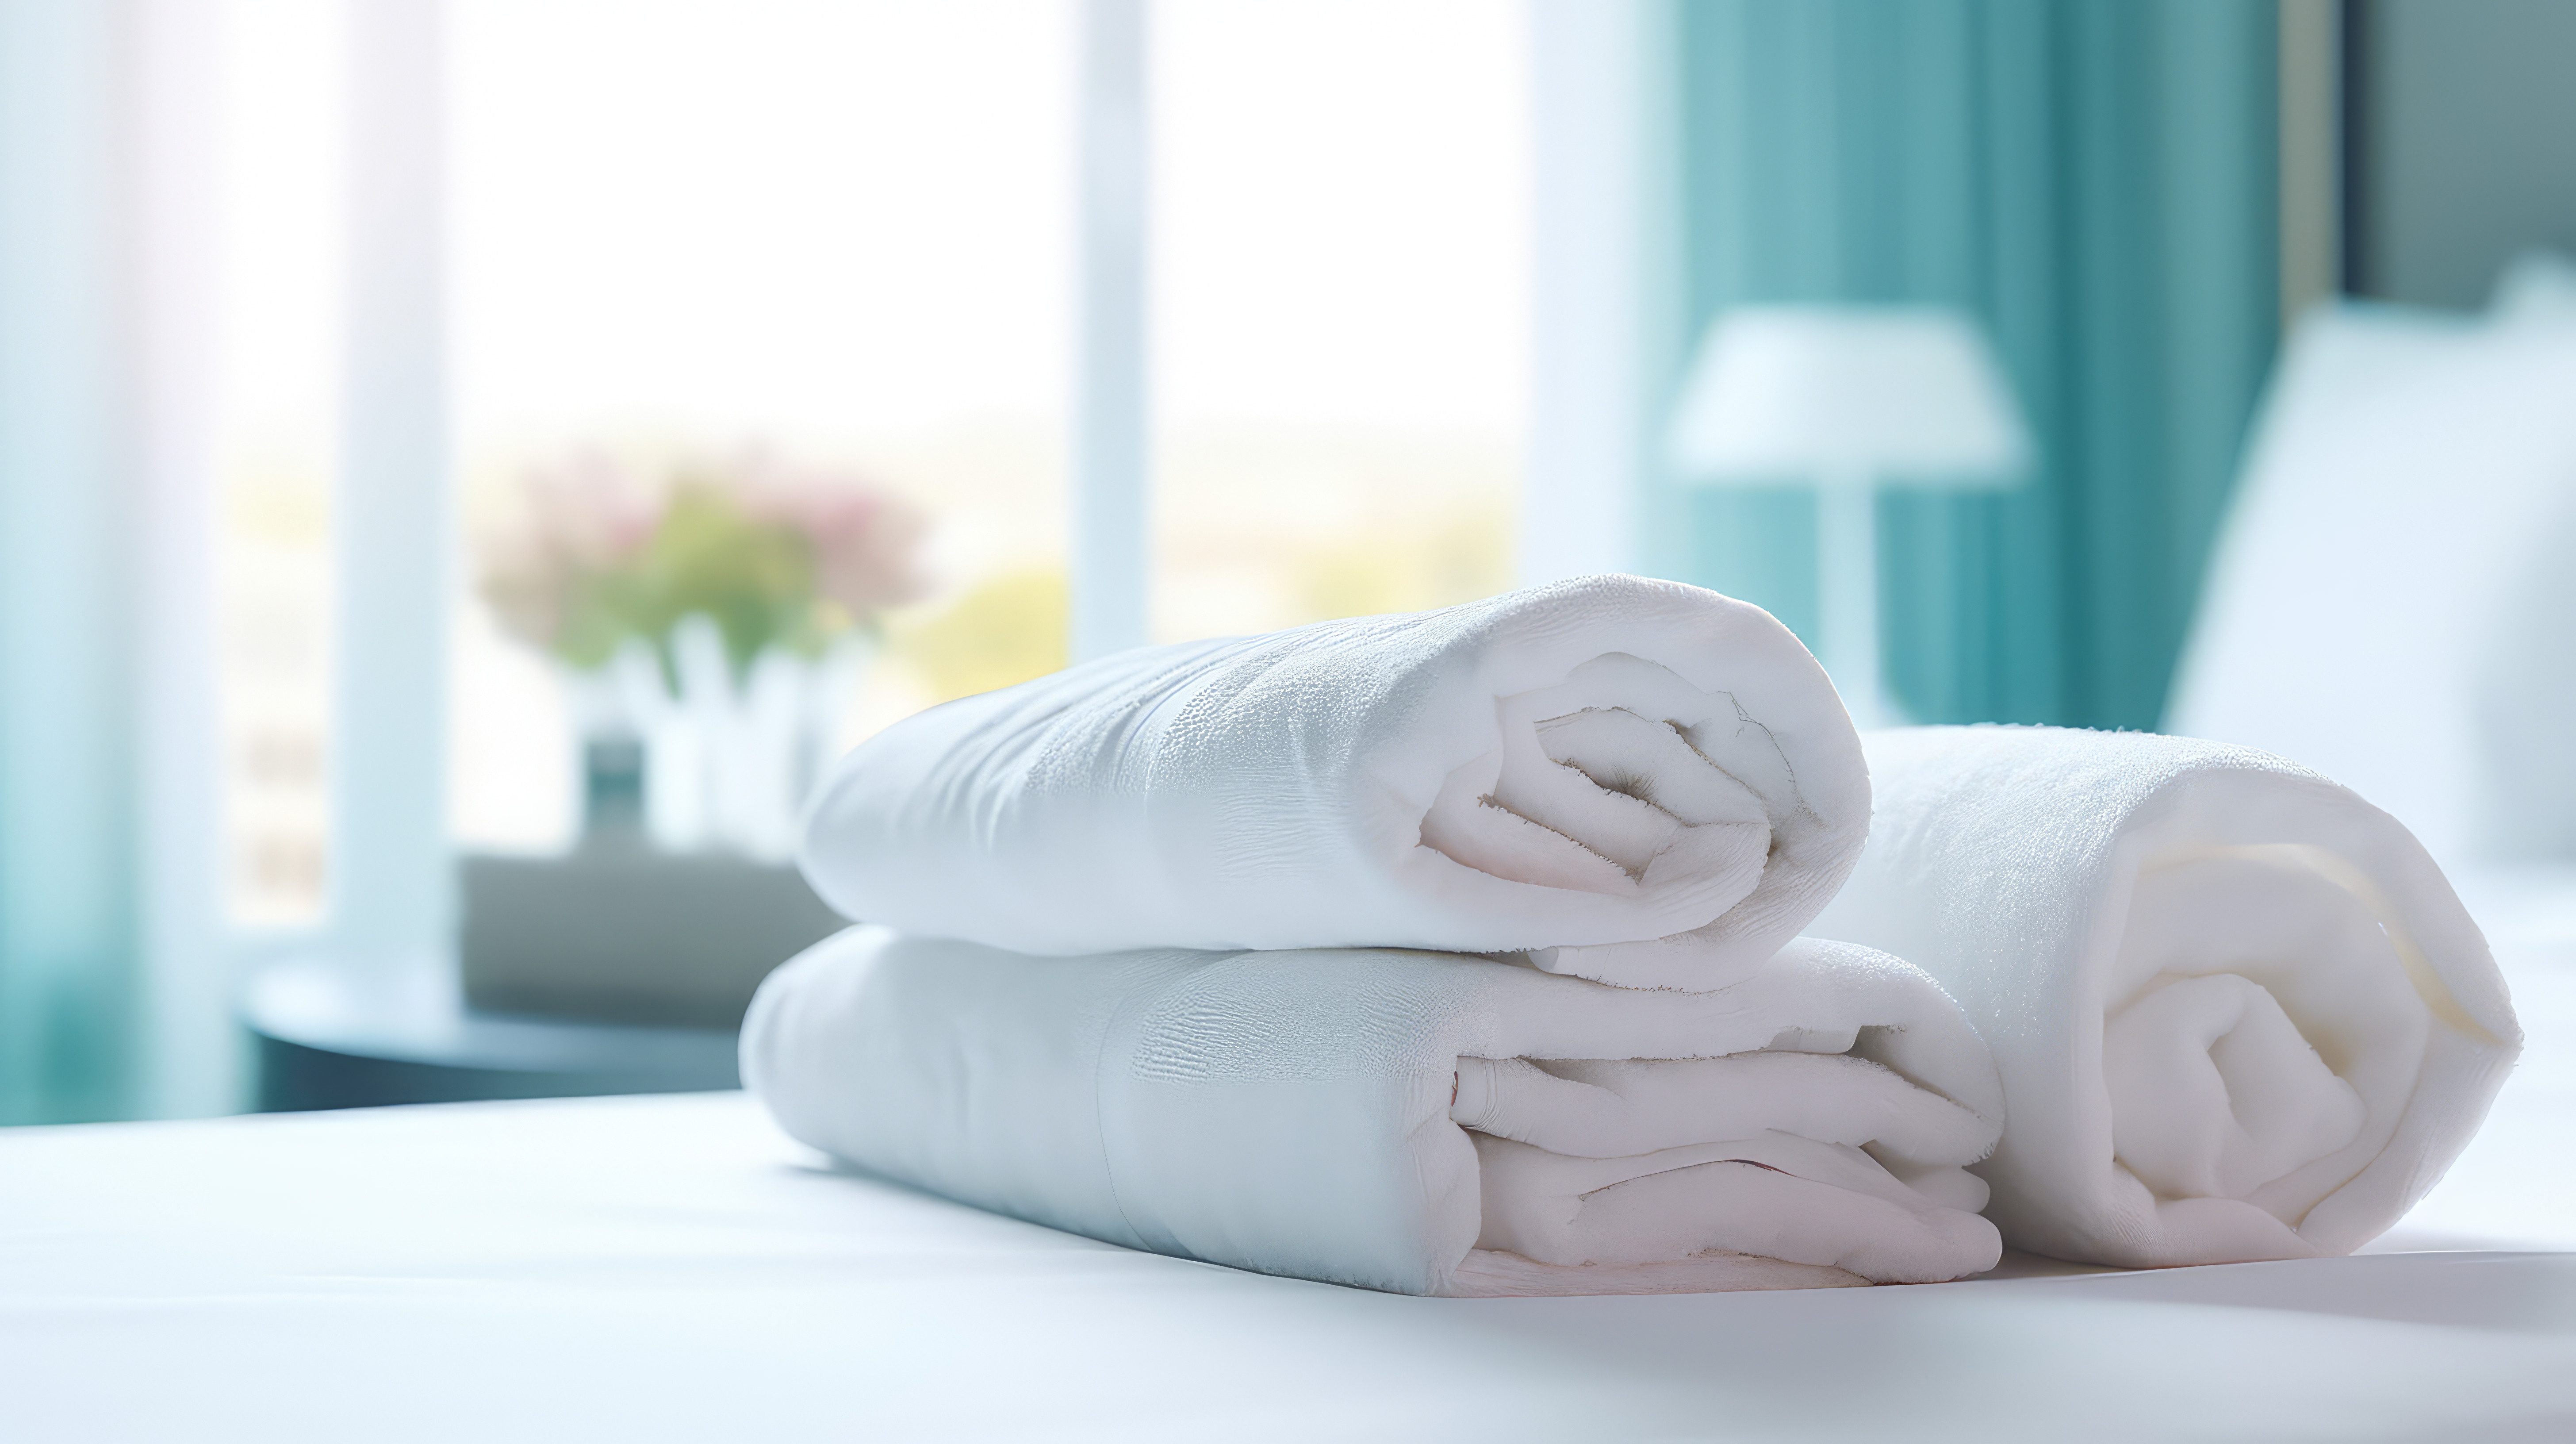 Segurança e Higiene em Hotel: Cuidado que gera Recomendações